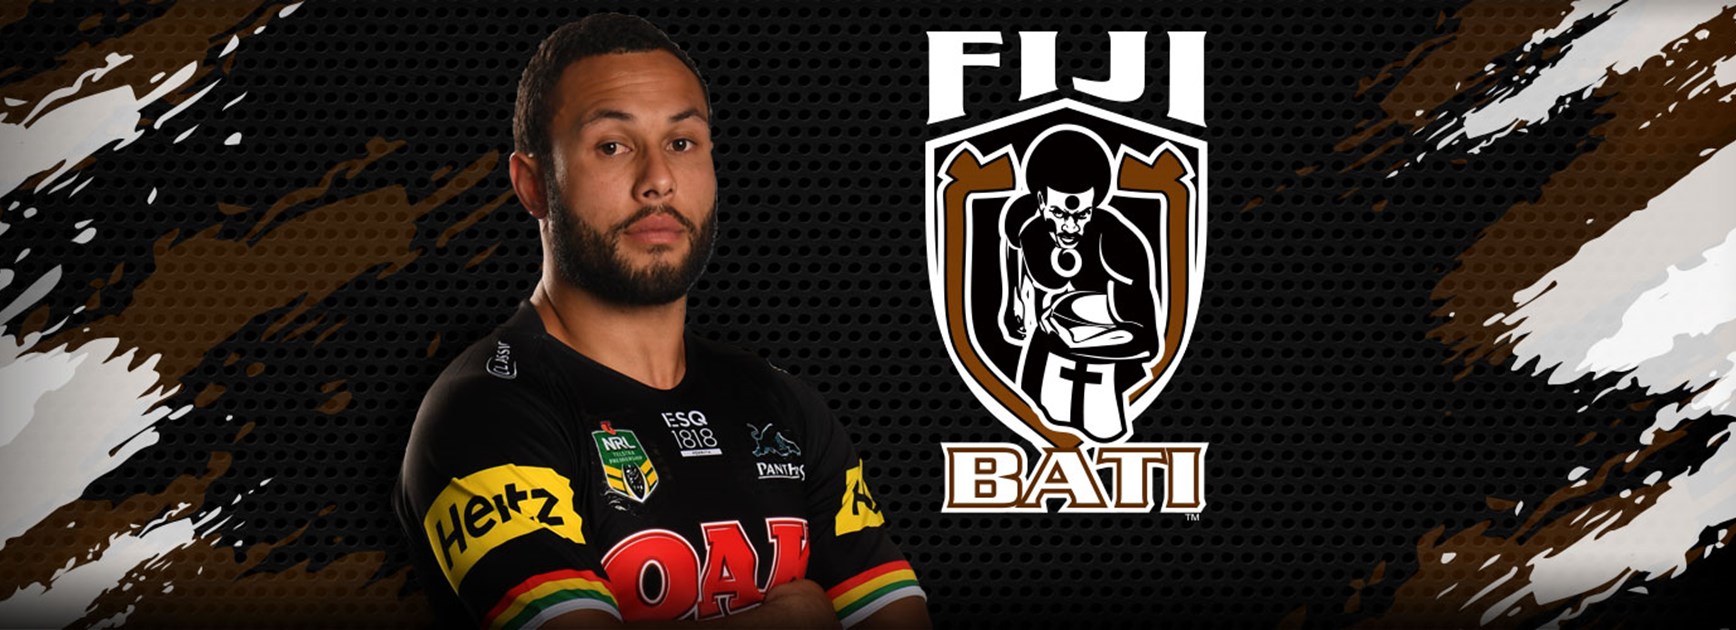 Phillips named for Fiji Bati